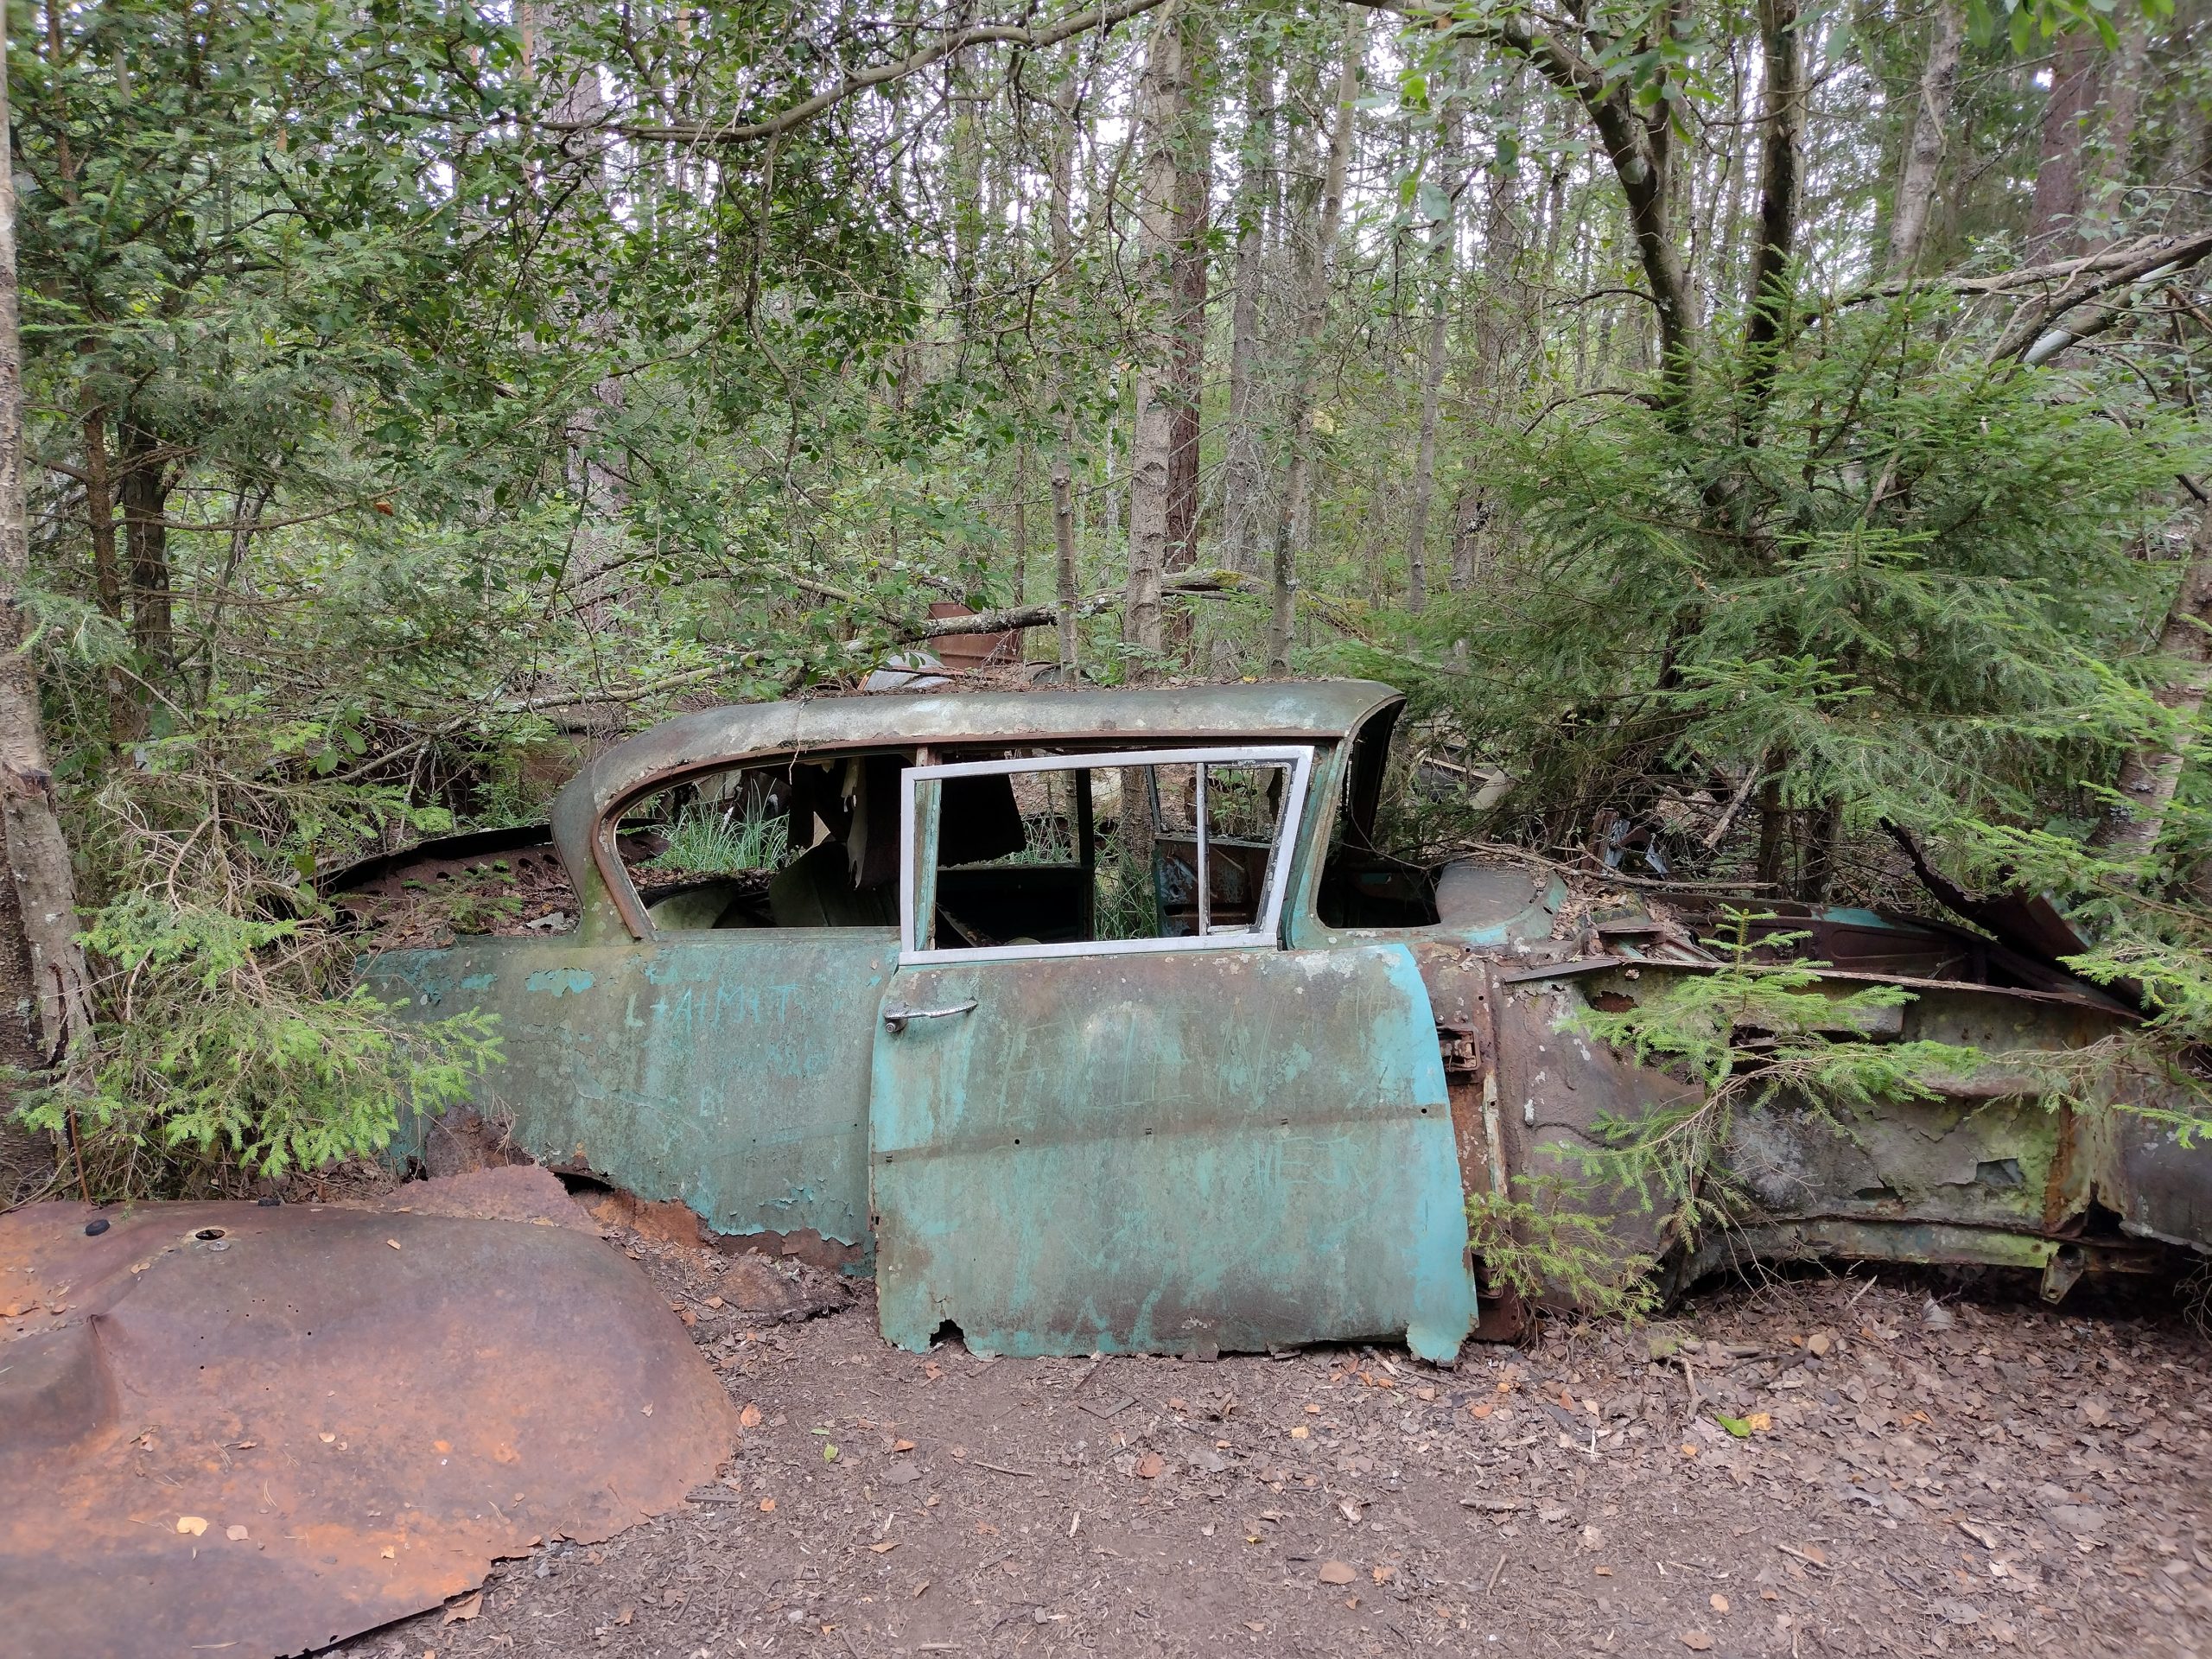 Cotxe verd blau molt deteriorat emmig del bosc